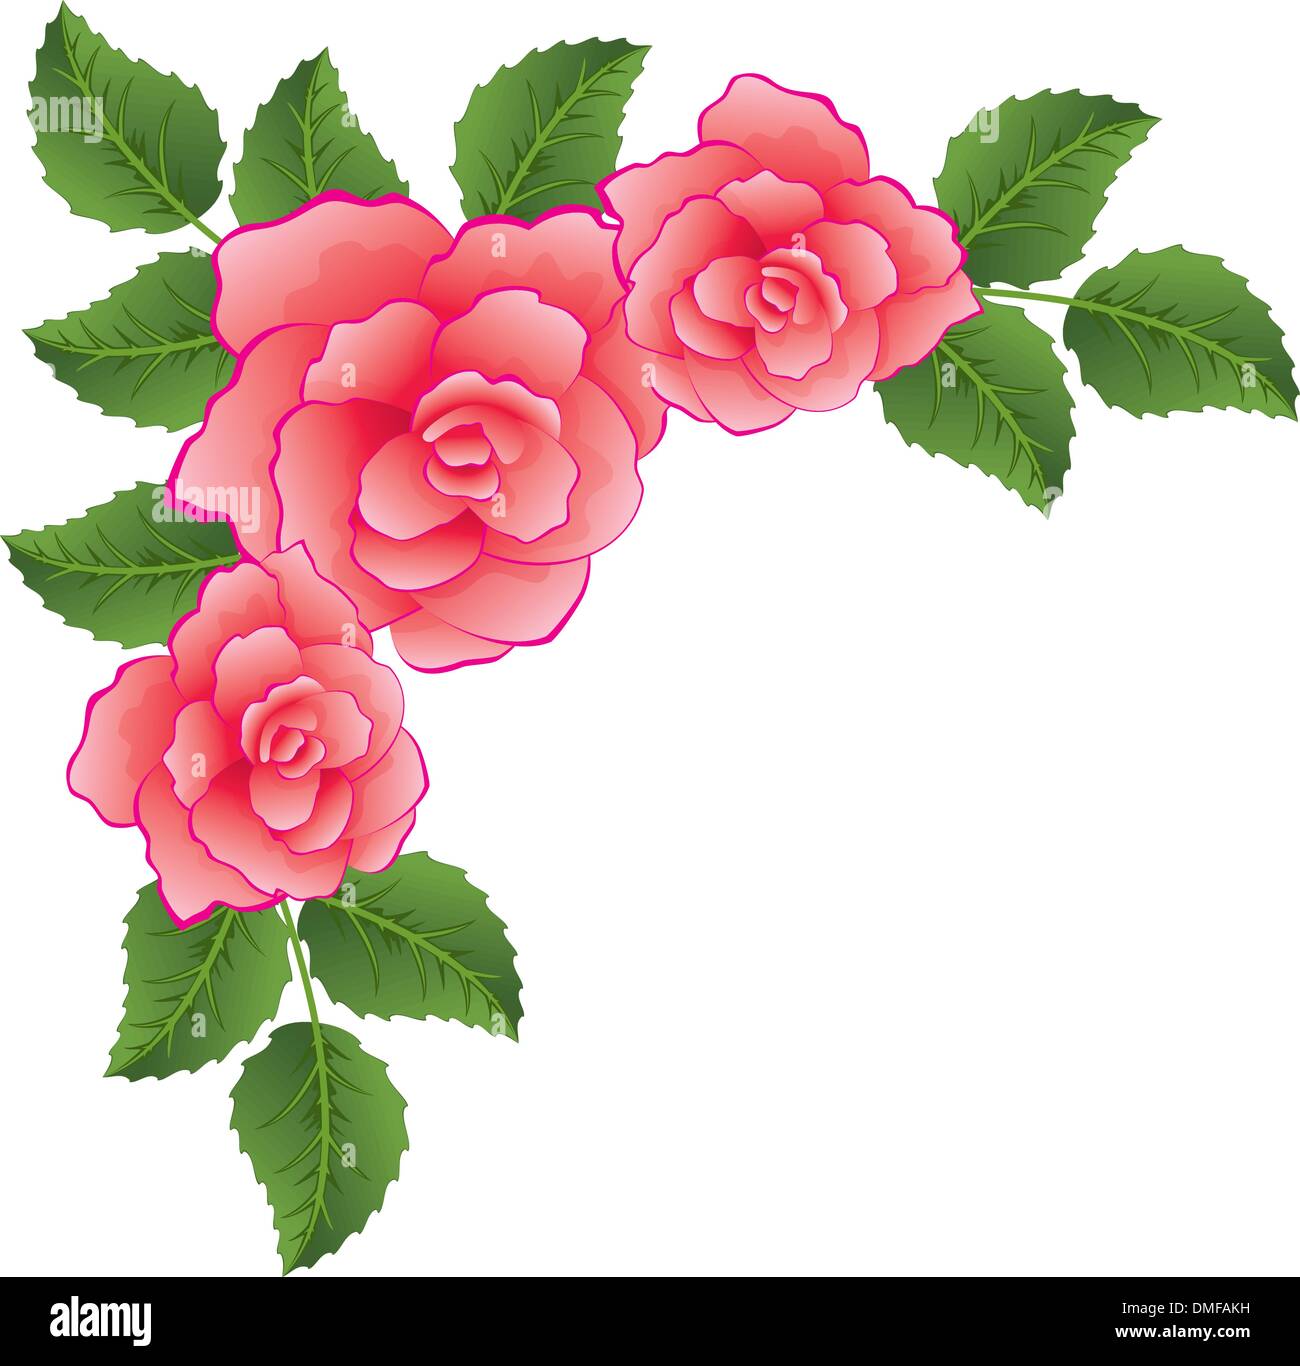 Vectores de rosas vectores fotografías e imágenes de alta resolución - Alamy